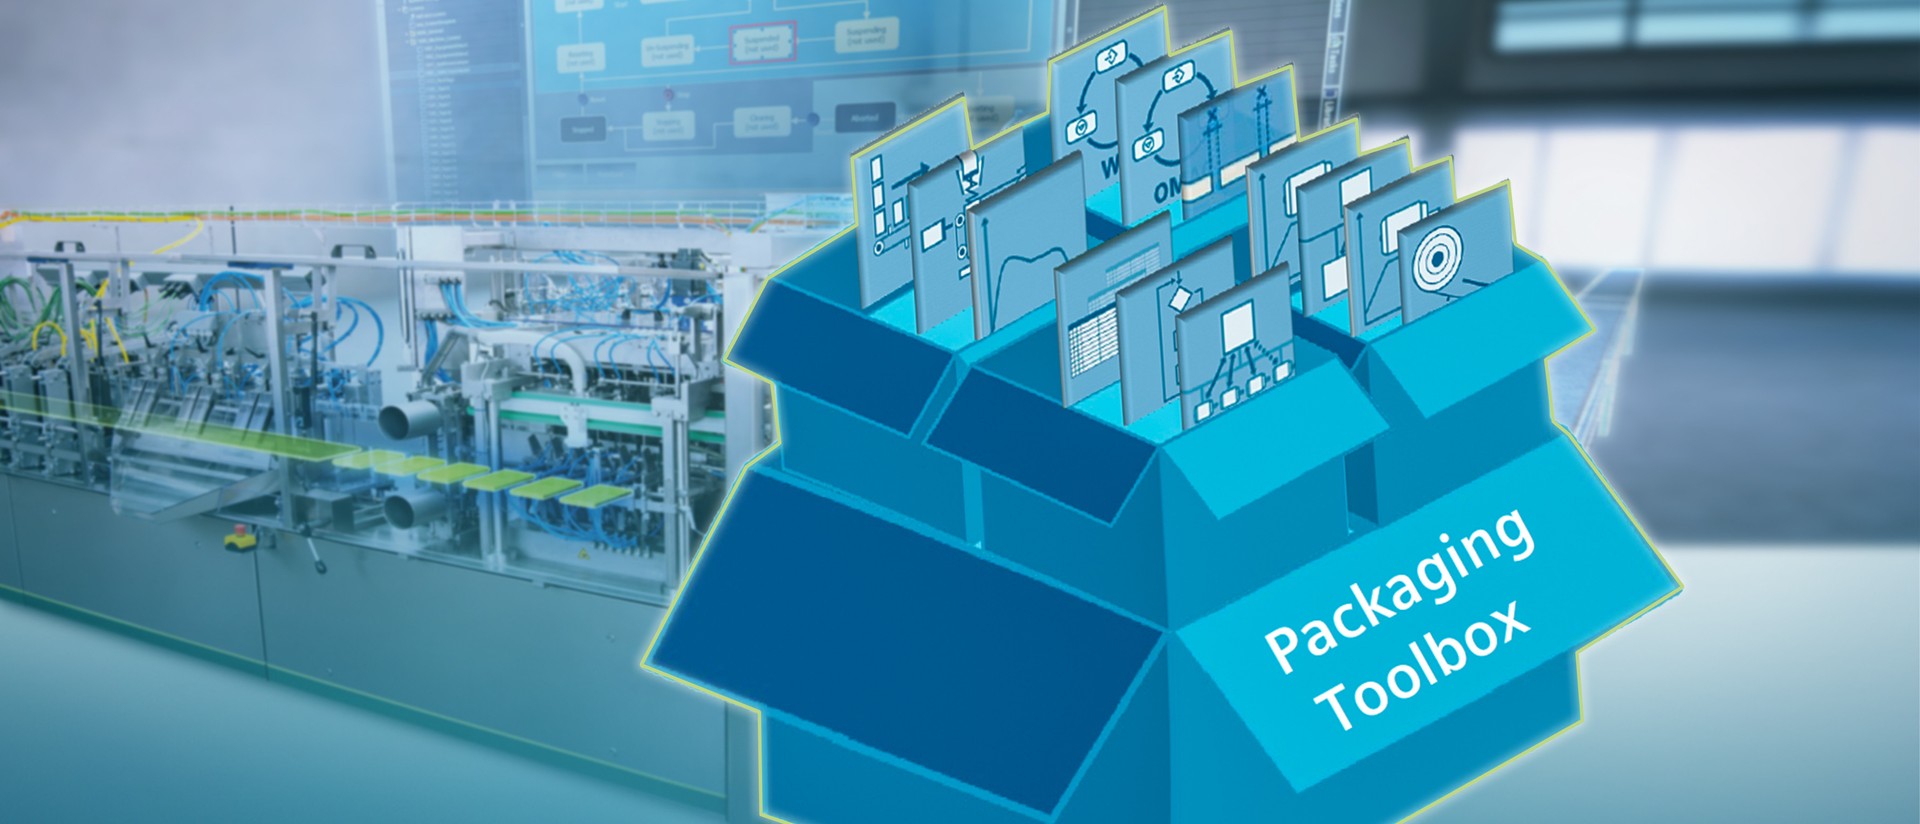 Siemens Packaging Toolbox